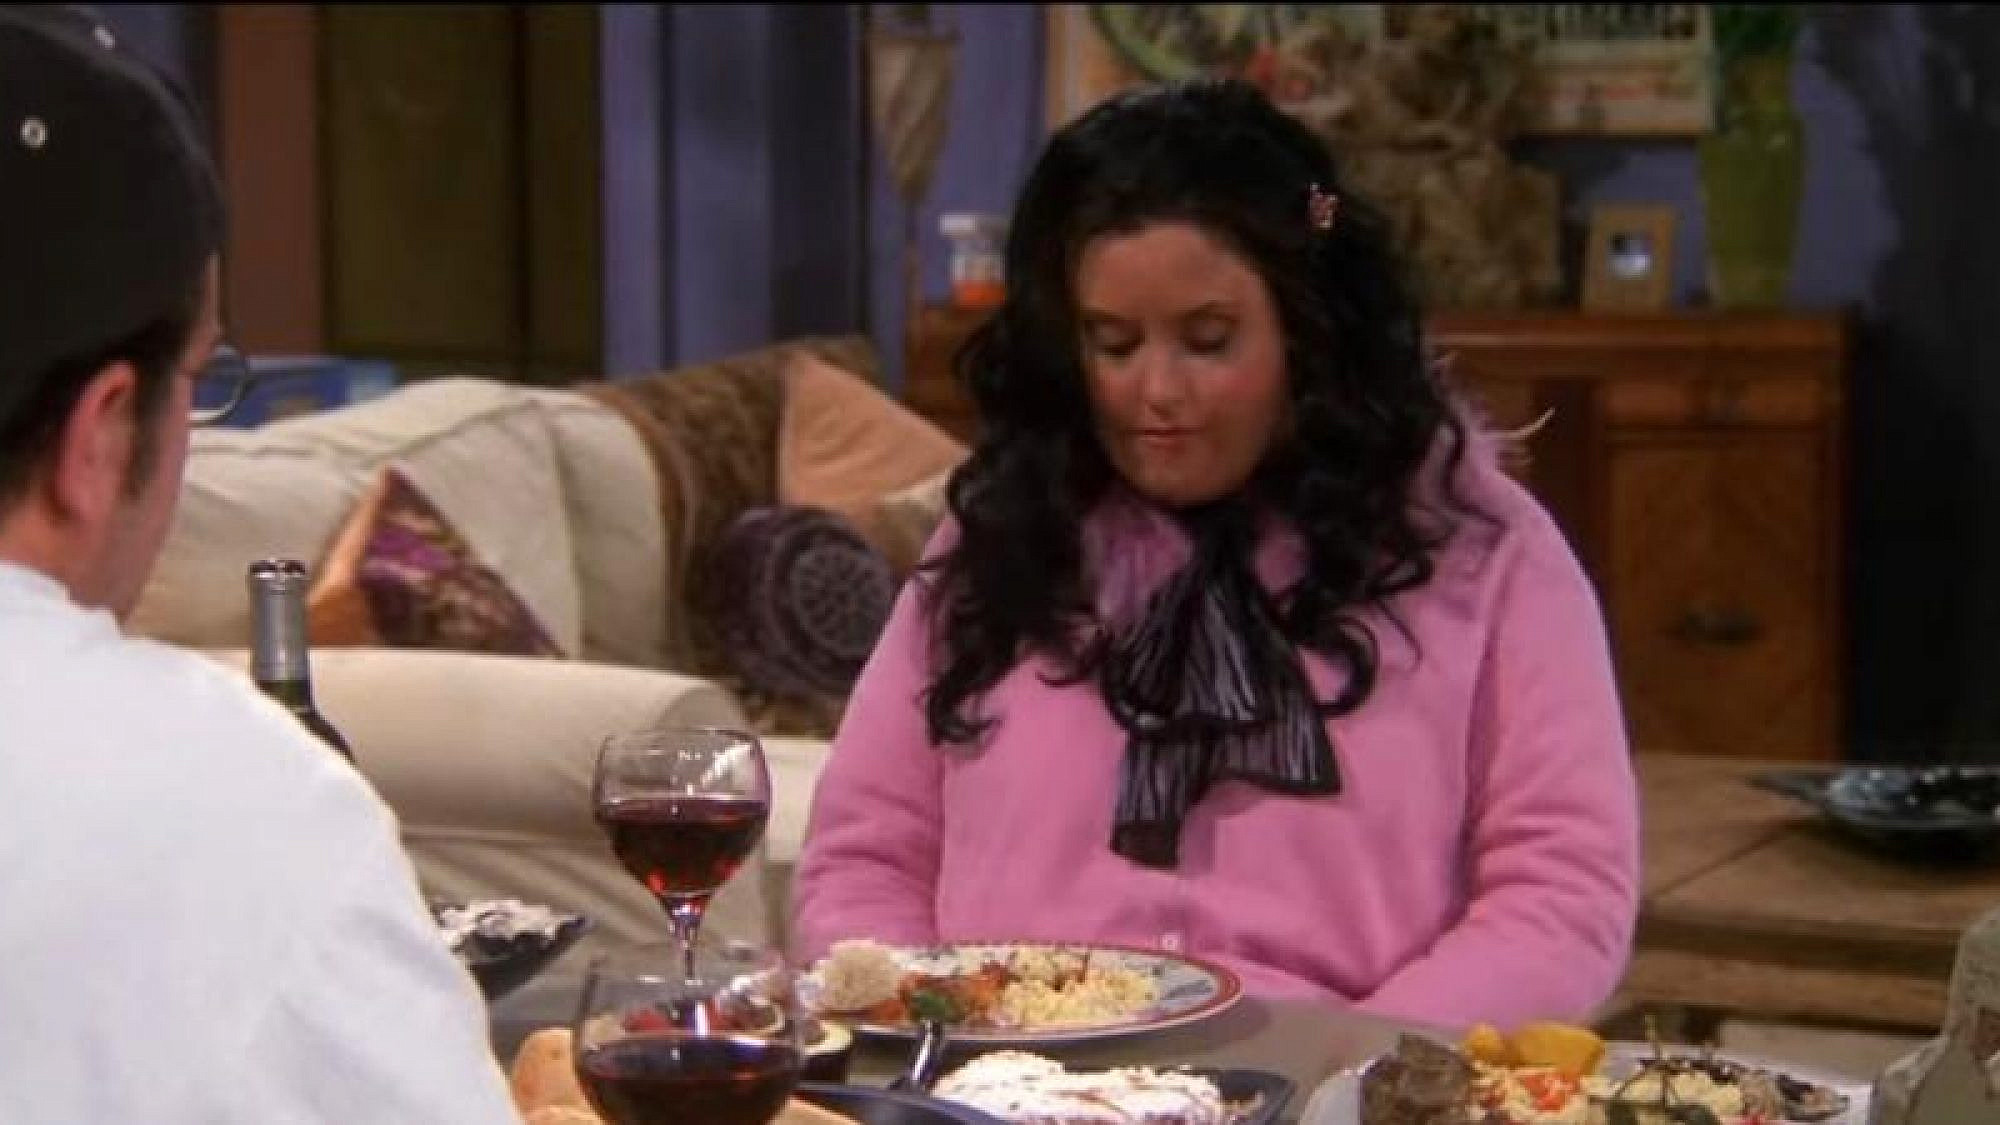 כולנו מפחדים להשמין | מוניקה בגרסה השמנה, צילום מסך מתוך "חברים", NBC